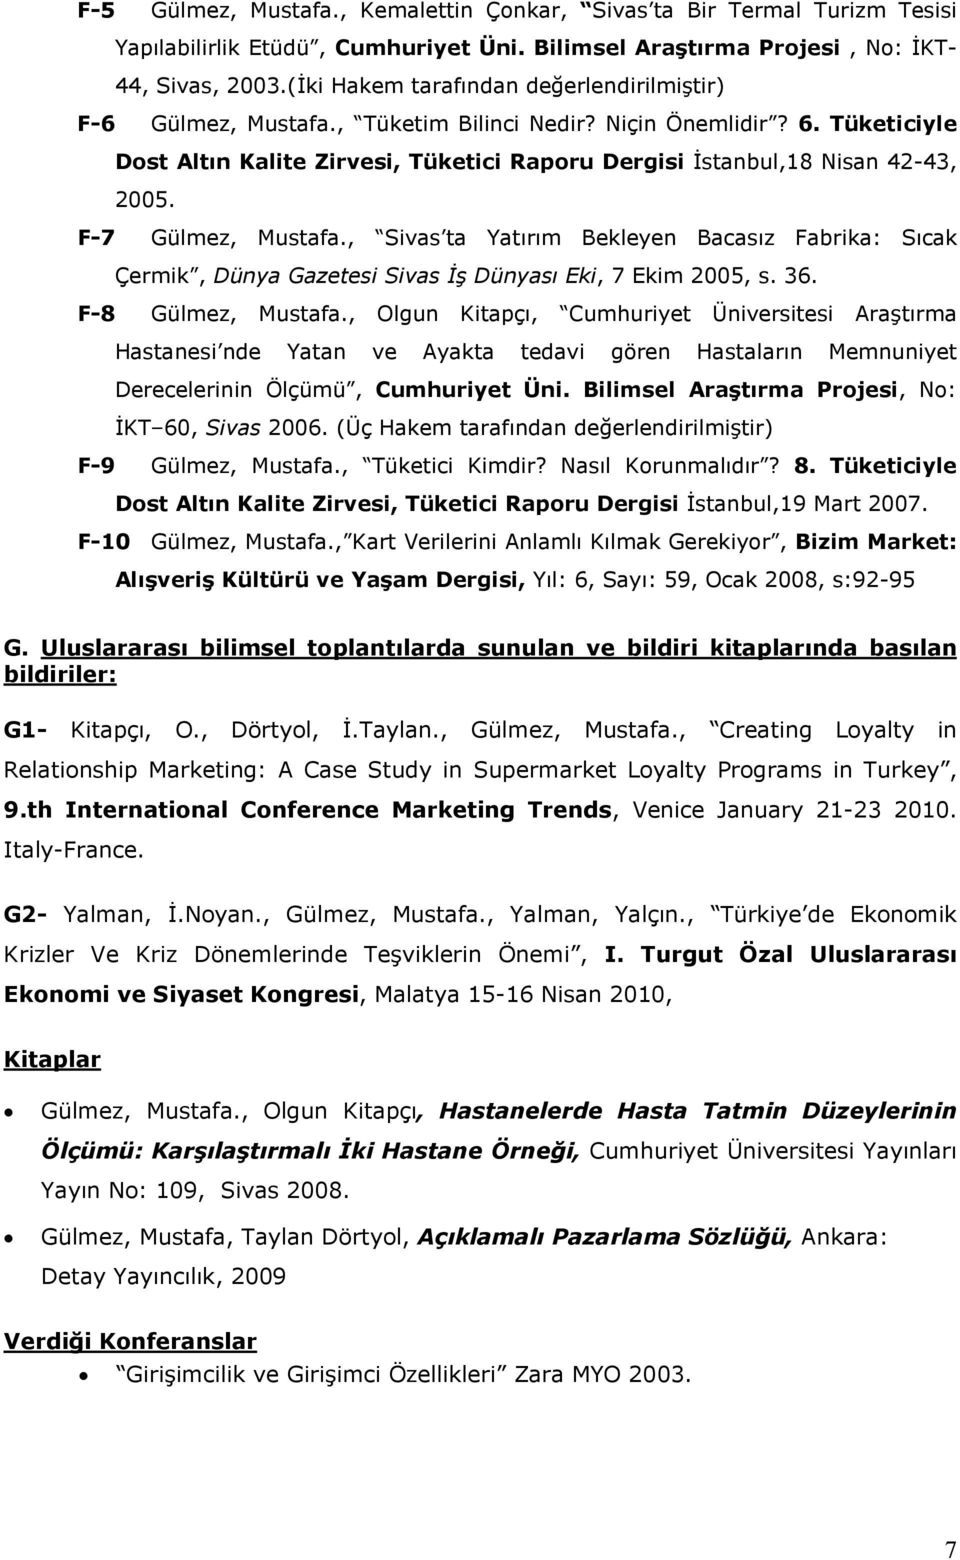 Tüketiciyle Dost Altın Kalite Zirvesi, Tüketici Raporu Dergisi Đstanbul,18 Nisan 42-43, 2005. F-7 Gülmez, Mustafa.